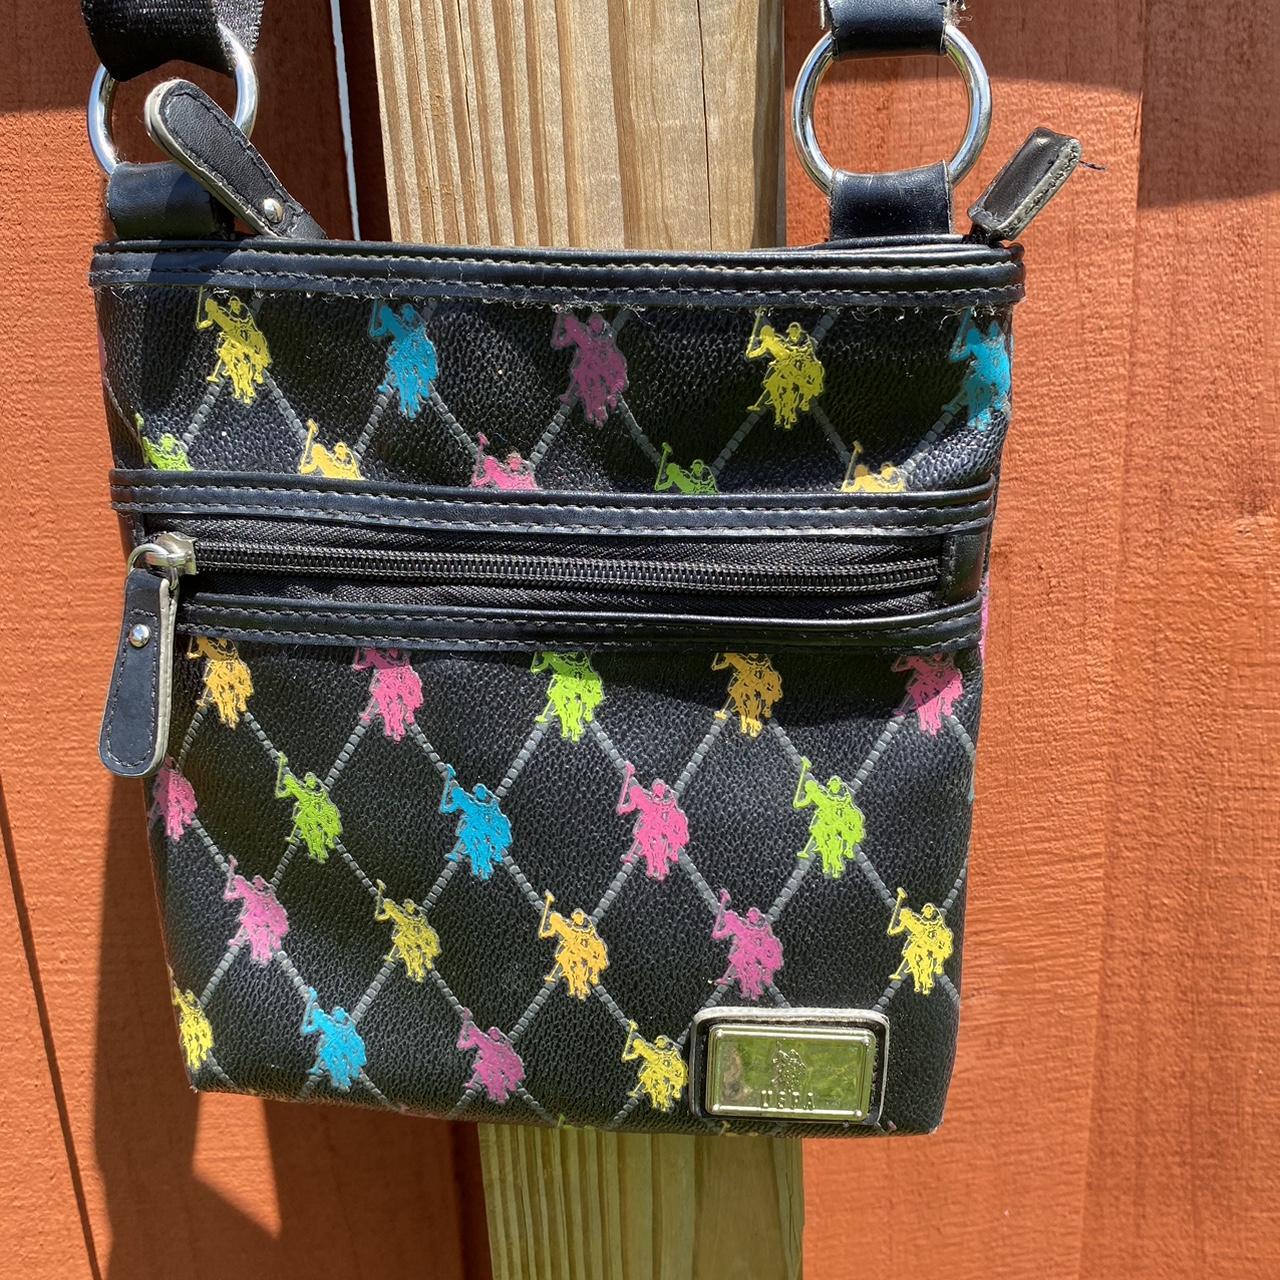 Thoughts on the Polo ID mini saddle bag? : r/handbags